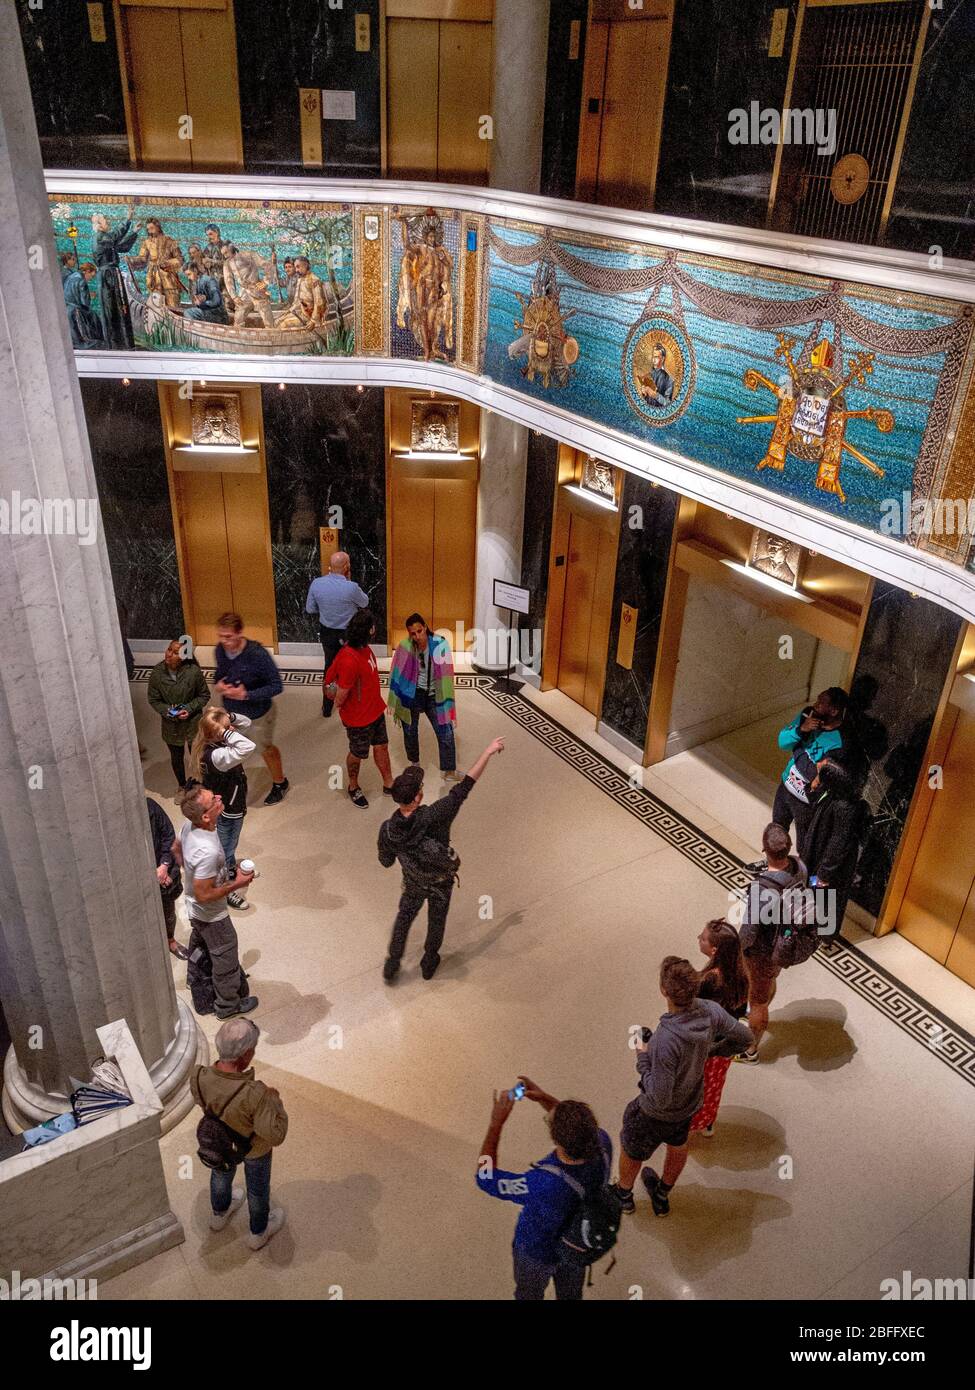 Das sechseckige Geländer um die Lobby des Marquette Building in Chicago ist mit einem Mosaikfries des Louis Comfort Tiffany Studios dekoriert, das Ereignisse im Leben von Jacques Marquette, seiner Erkundung von Illinois im Jahr 1674 und den von ihm begegneten Indianern darstellt. Stockfoto